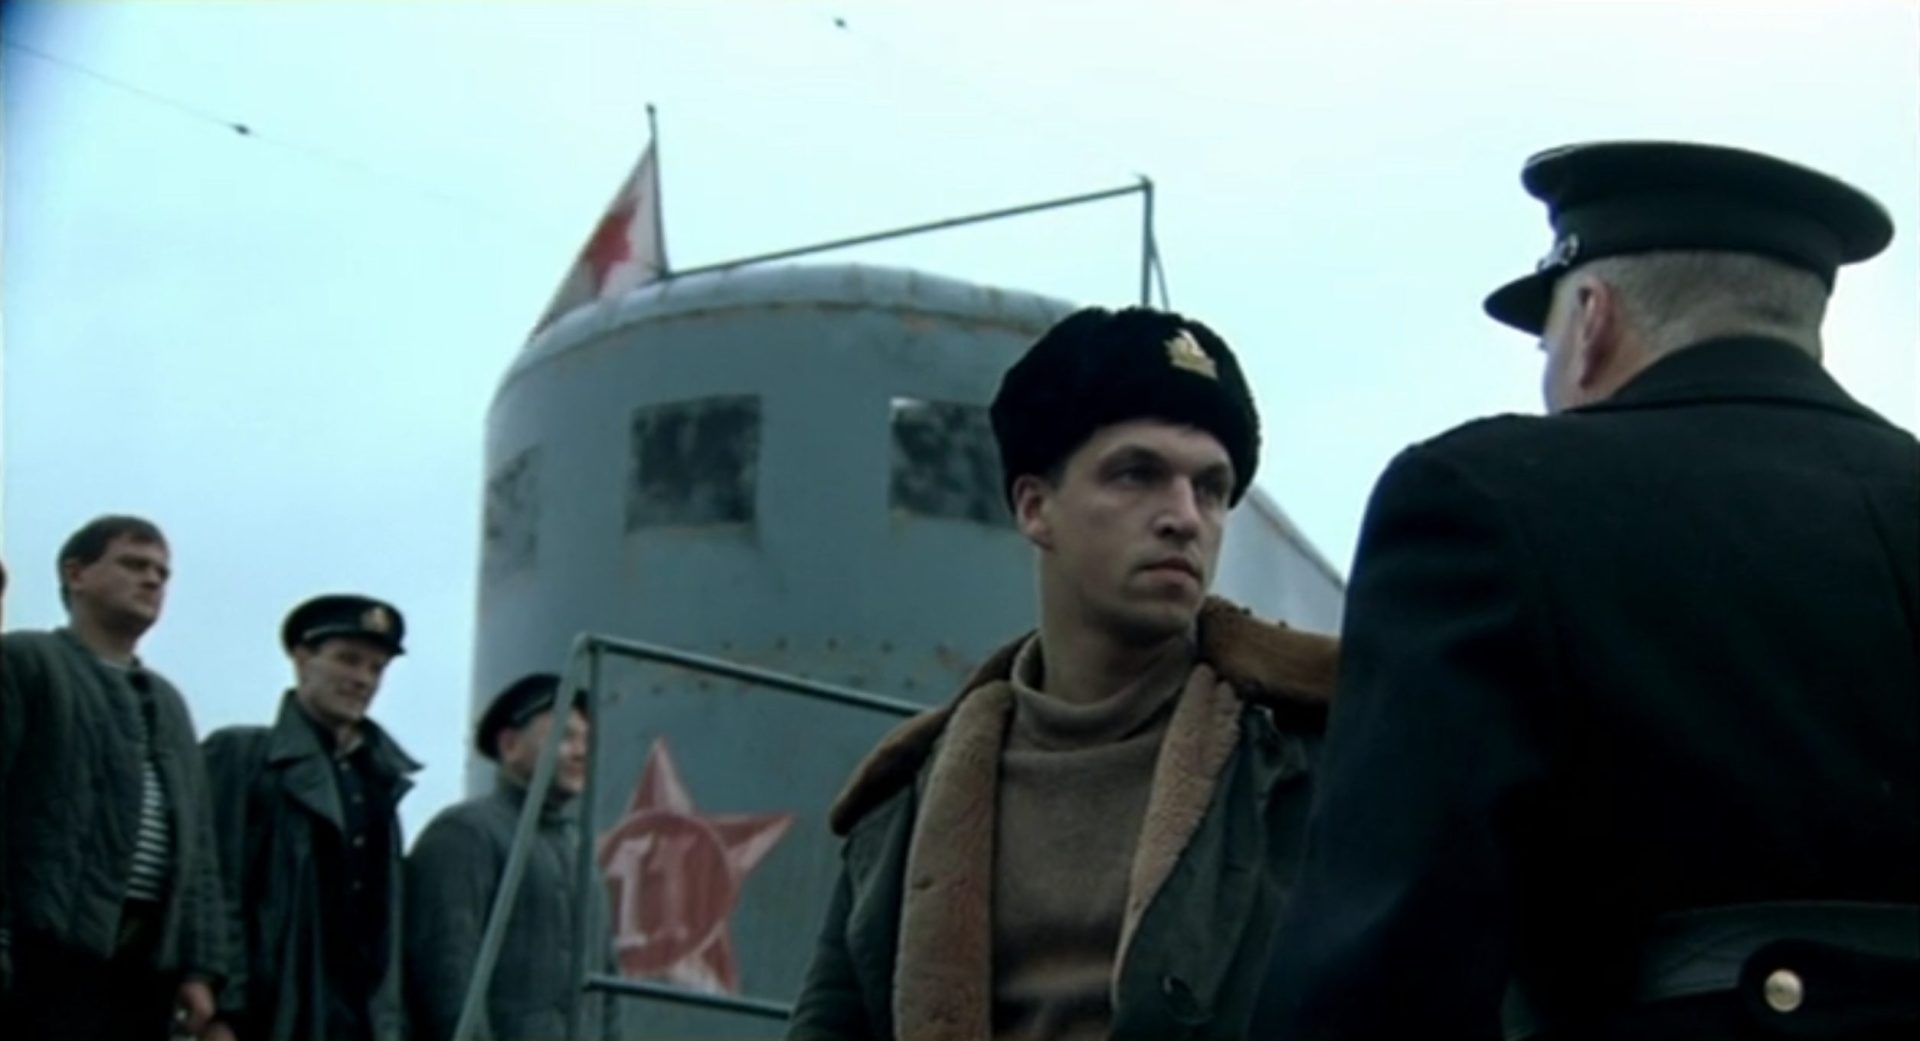 Dmitriy Orlov als sowjetischer U-Boot-Kommandant Aleksandr Marinin mit entschlossenem Blick, im Hintergrund der Turm seines U-Bootes und drei an Deck stehende Besatzungsmitglieder.